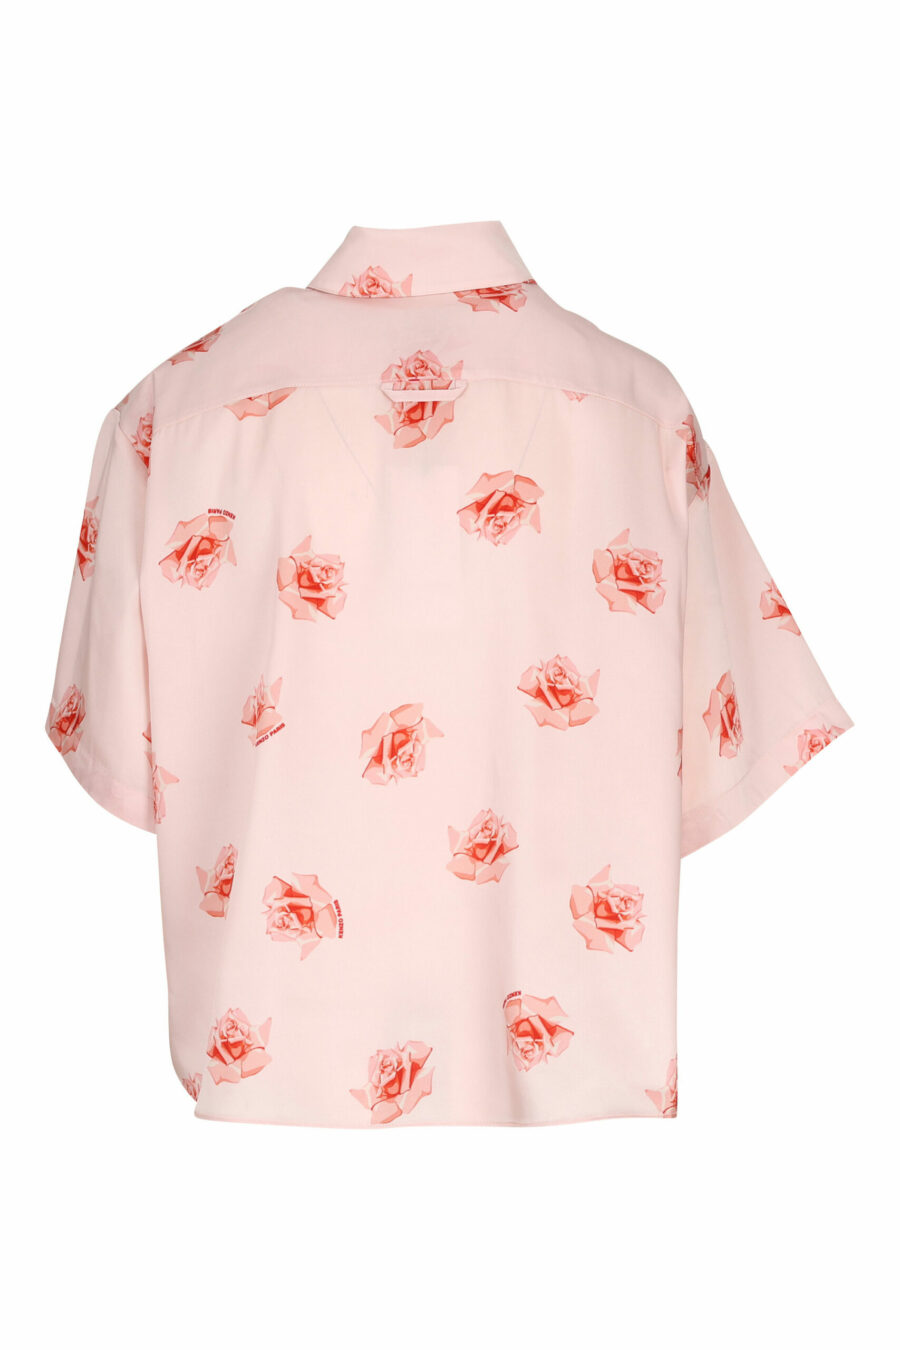 Camisa rosa manga corta con logo "kenzo rose" - 3612230604797 1 scaled